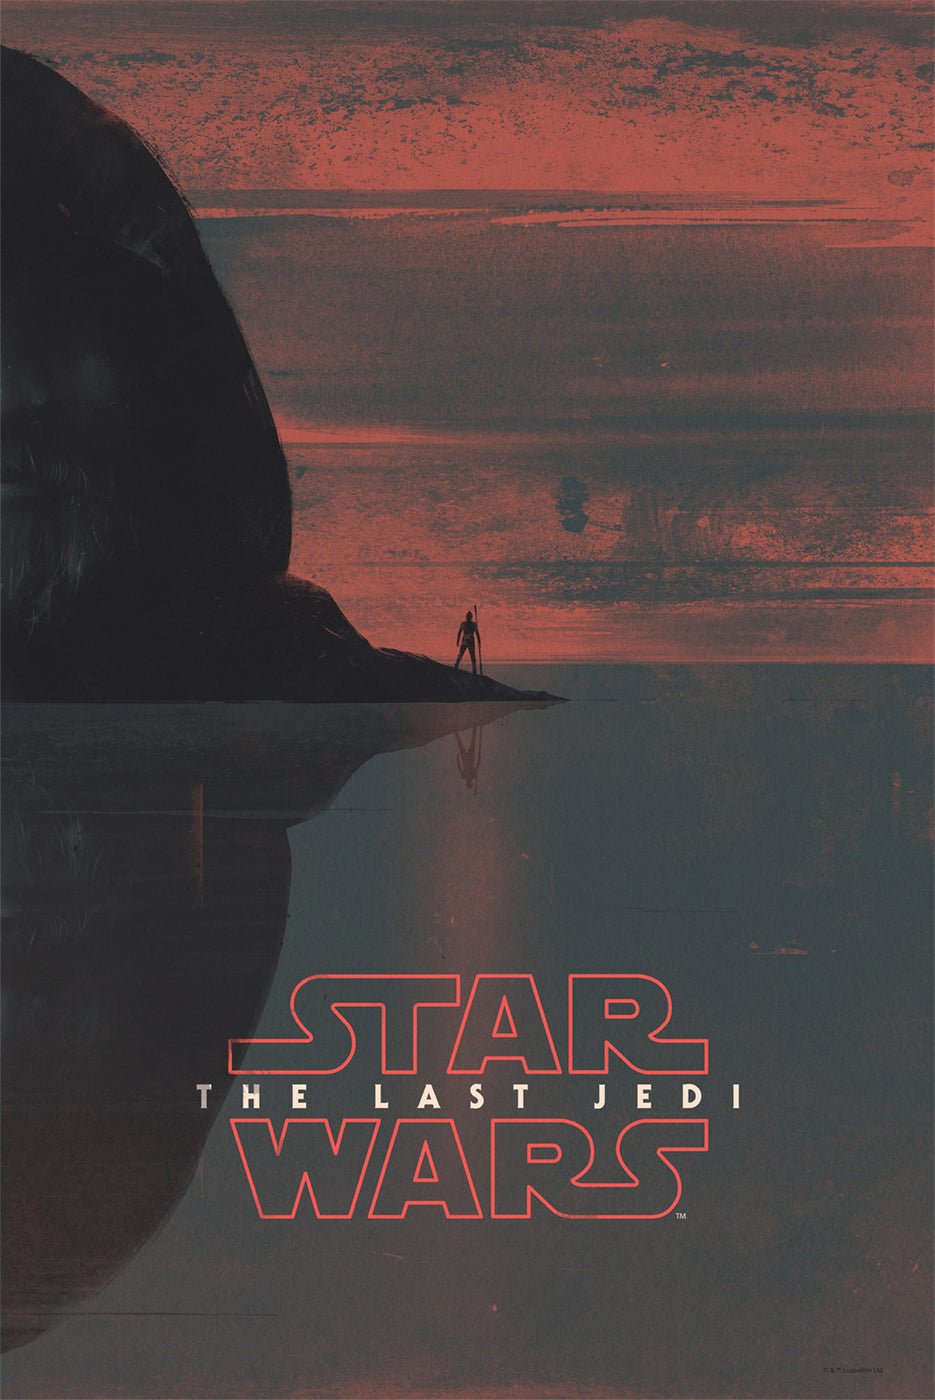 Patrik Svensson "Star Wars: The Last Jedi"